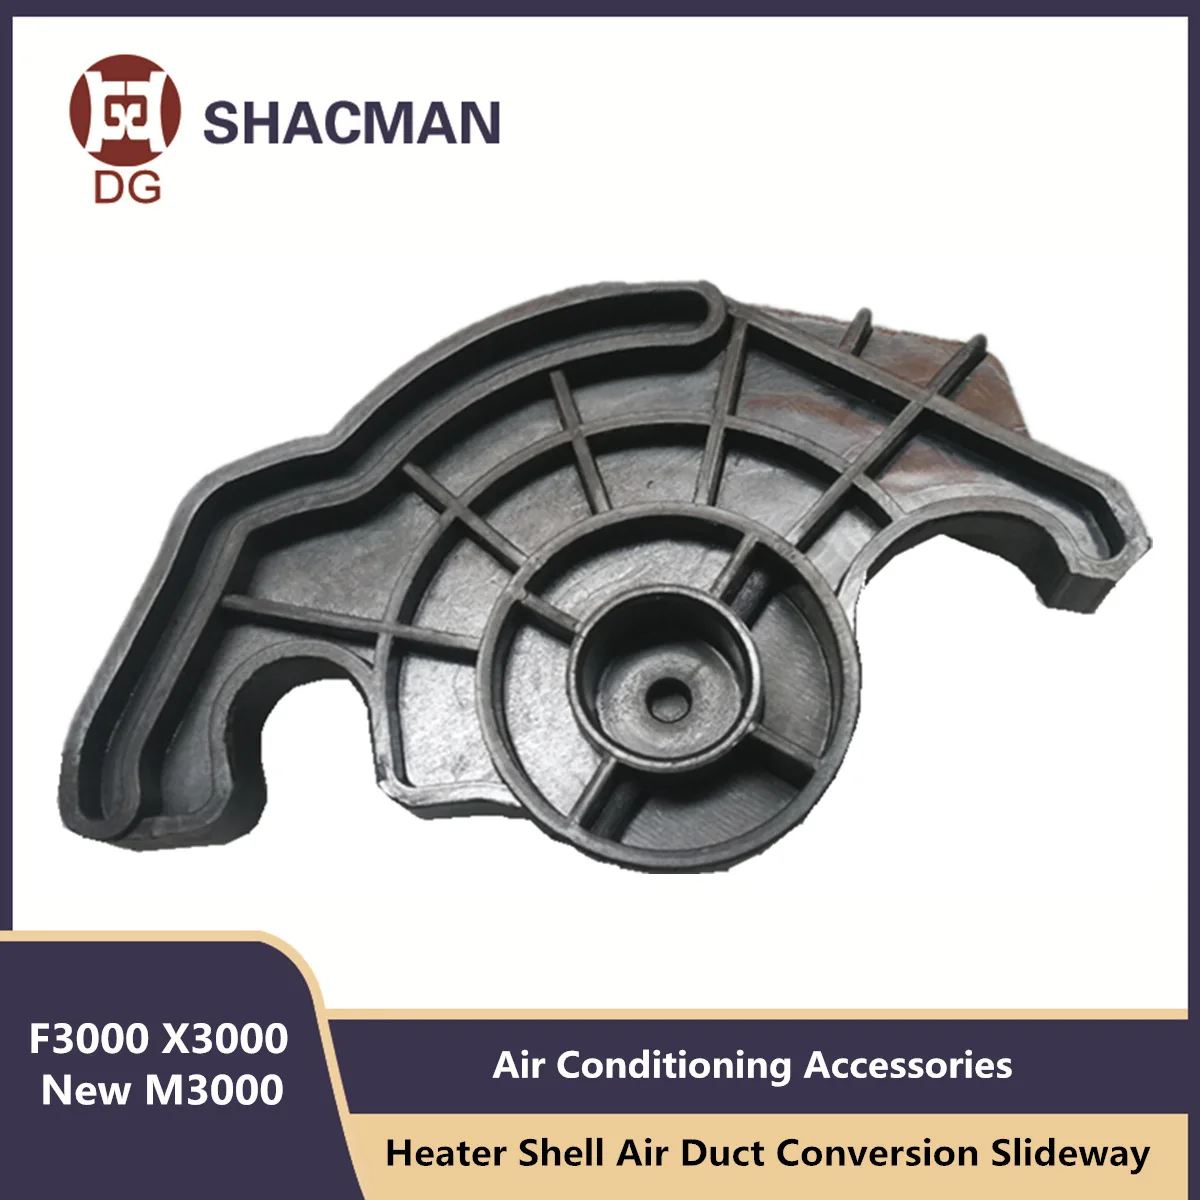 Направляющая для преобразования воздуховода отопителя для SHACMAN F3000 новые Аксессуары для кондиционирования воздуха M3000X30000